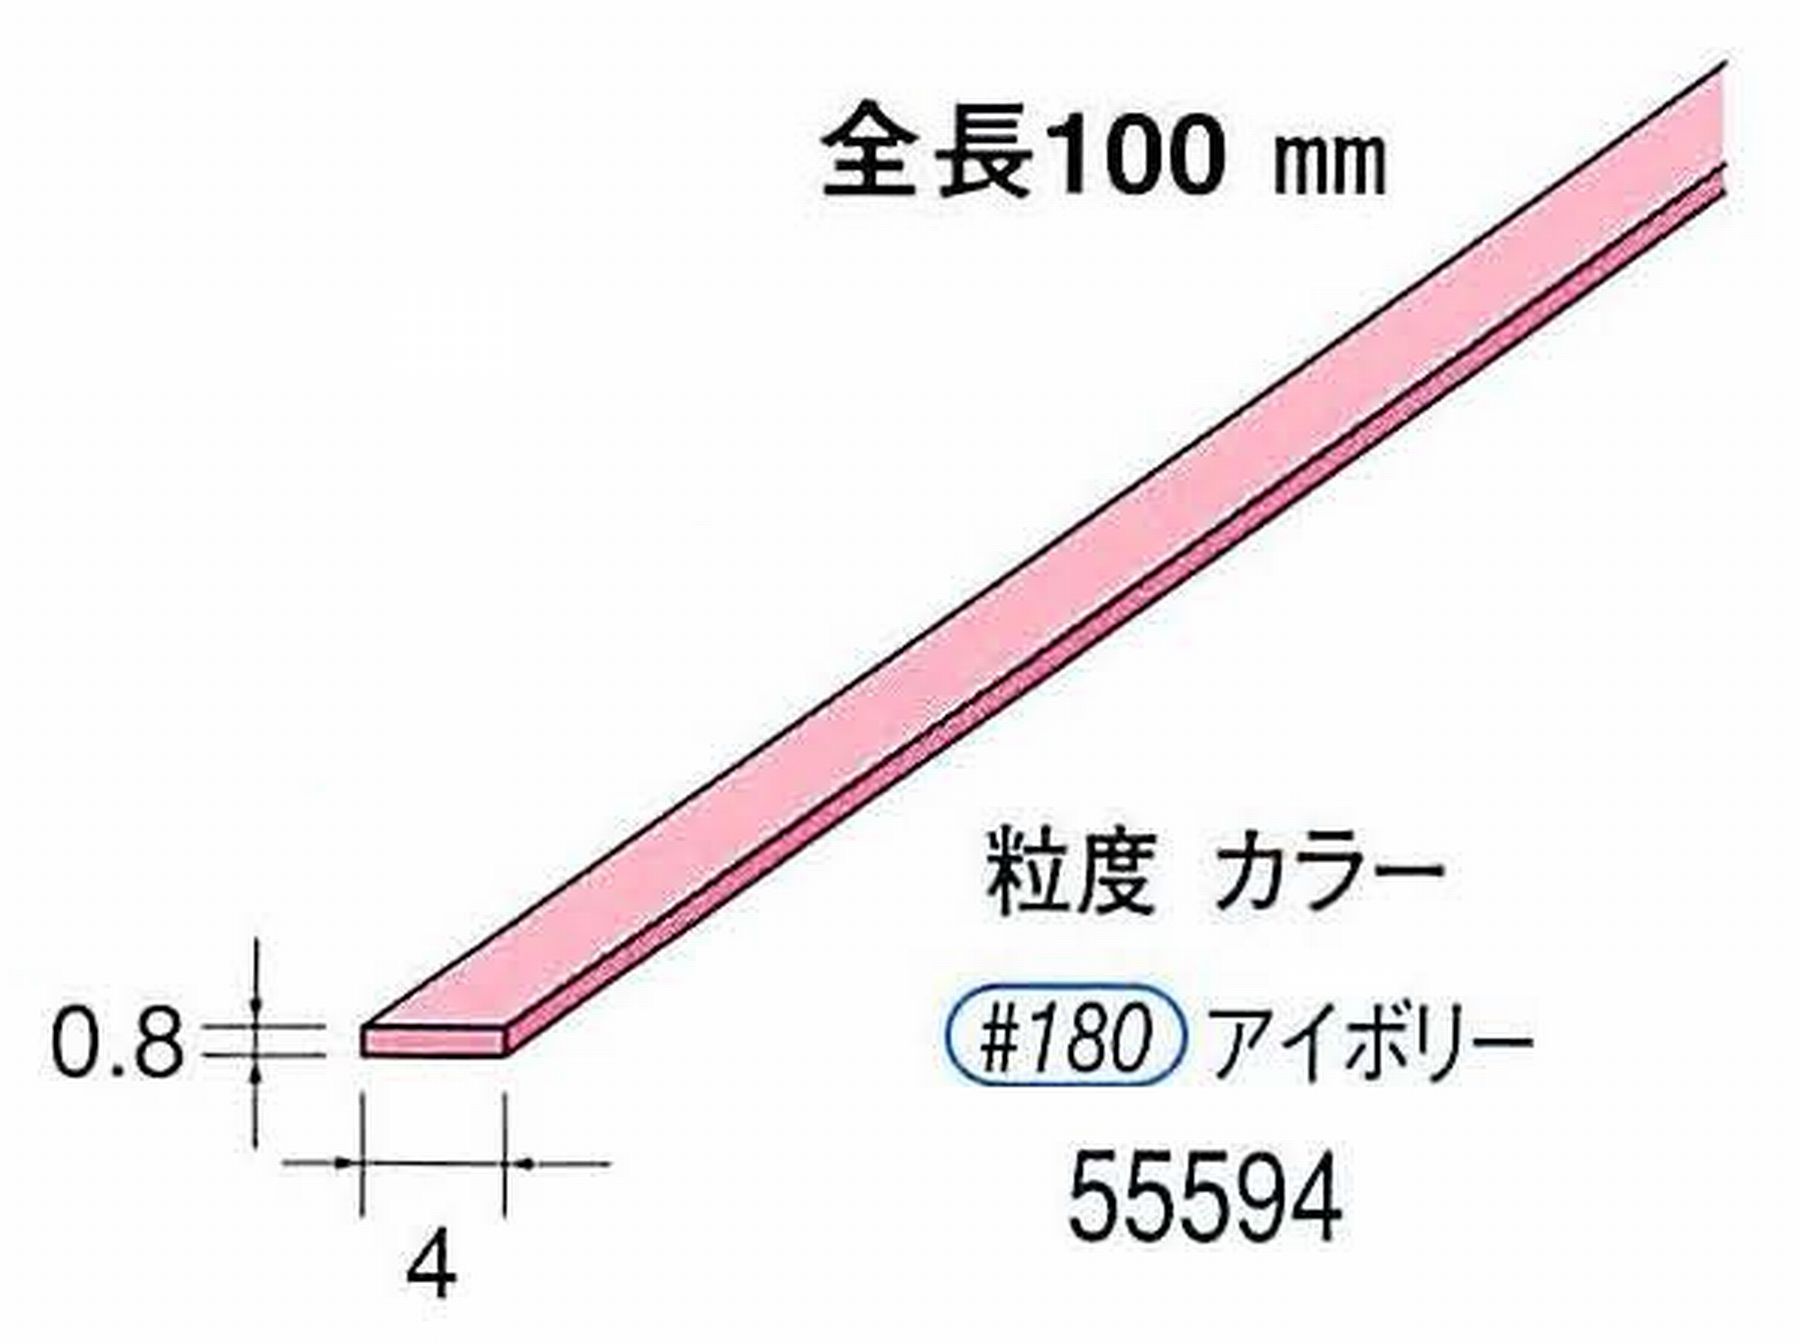 ナカニシ/NAKANISHI セラファイバー砥石 全長100mm アイボリー 55594